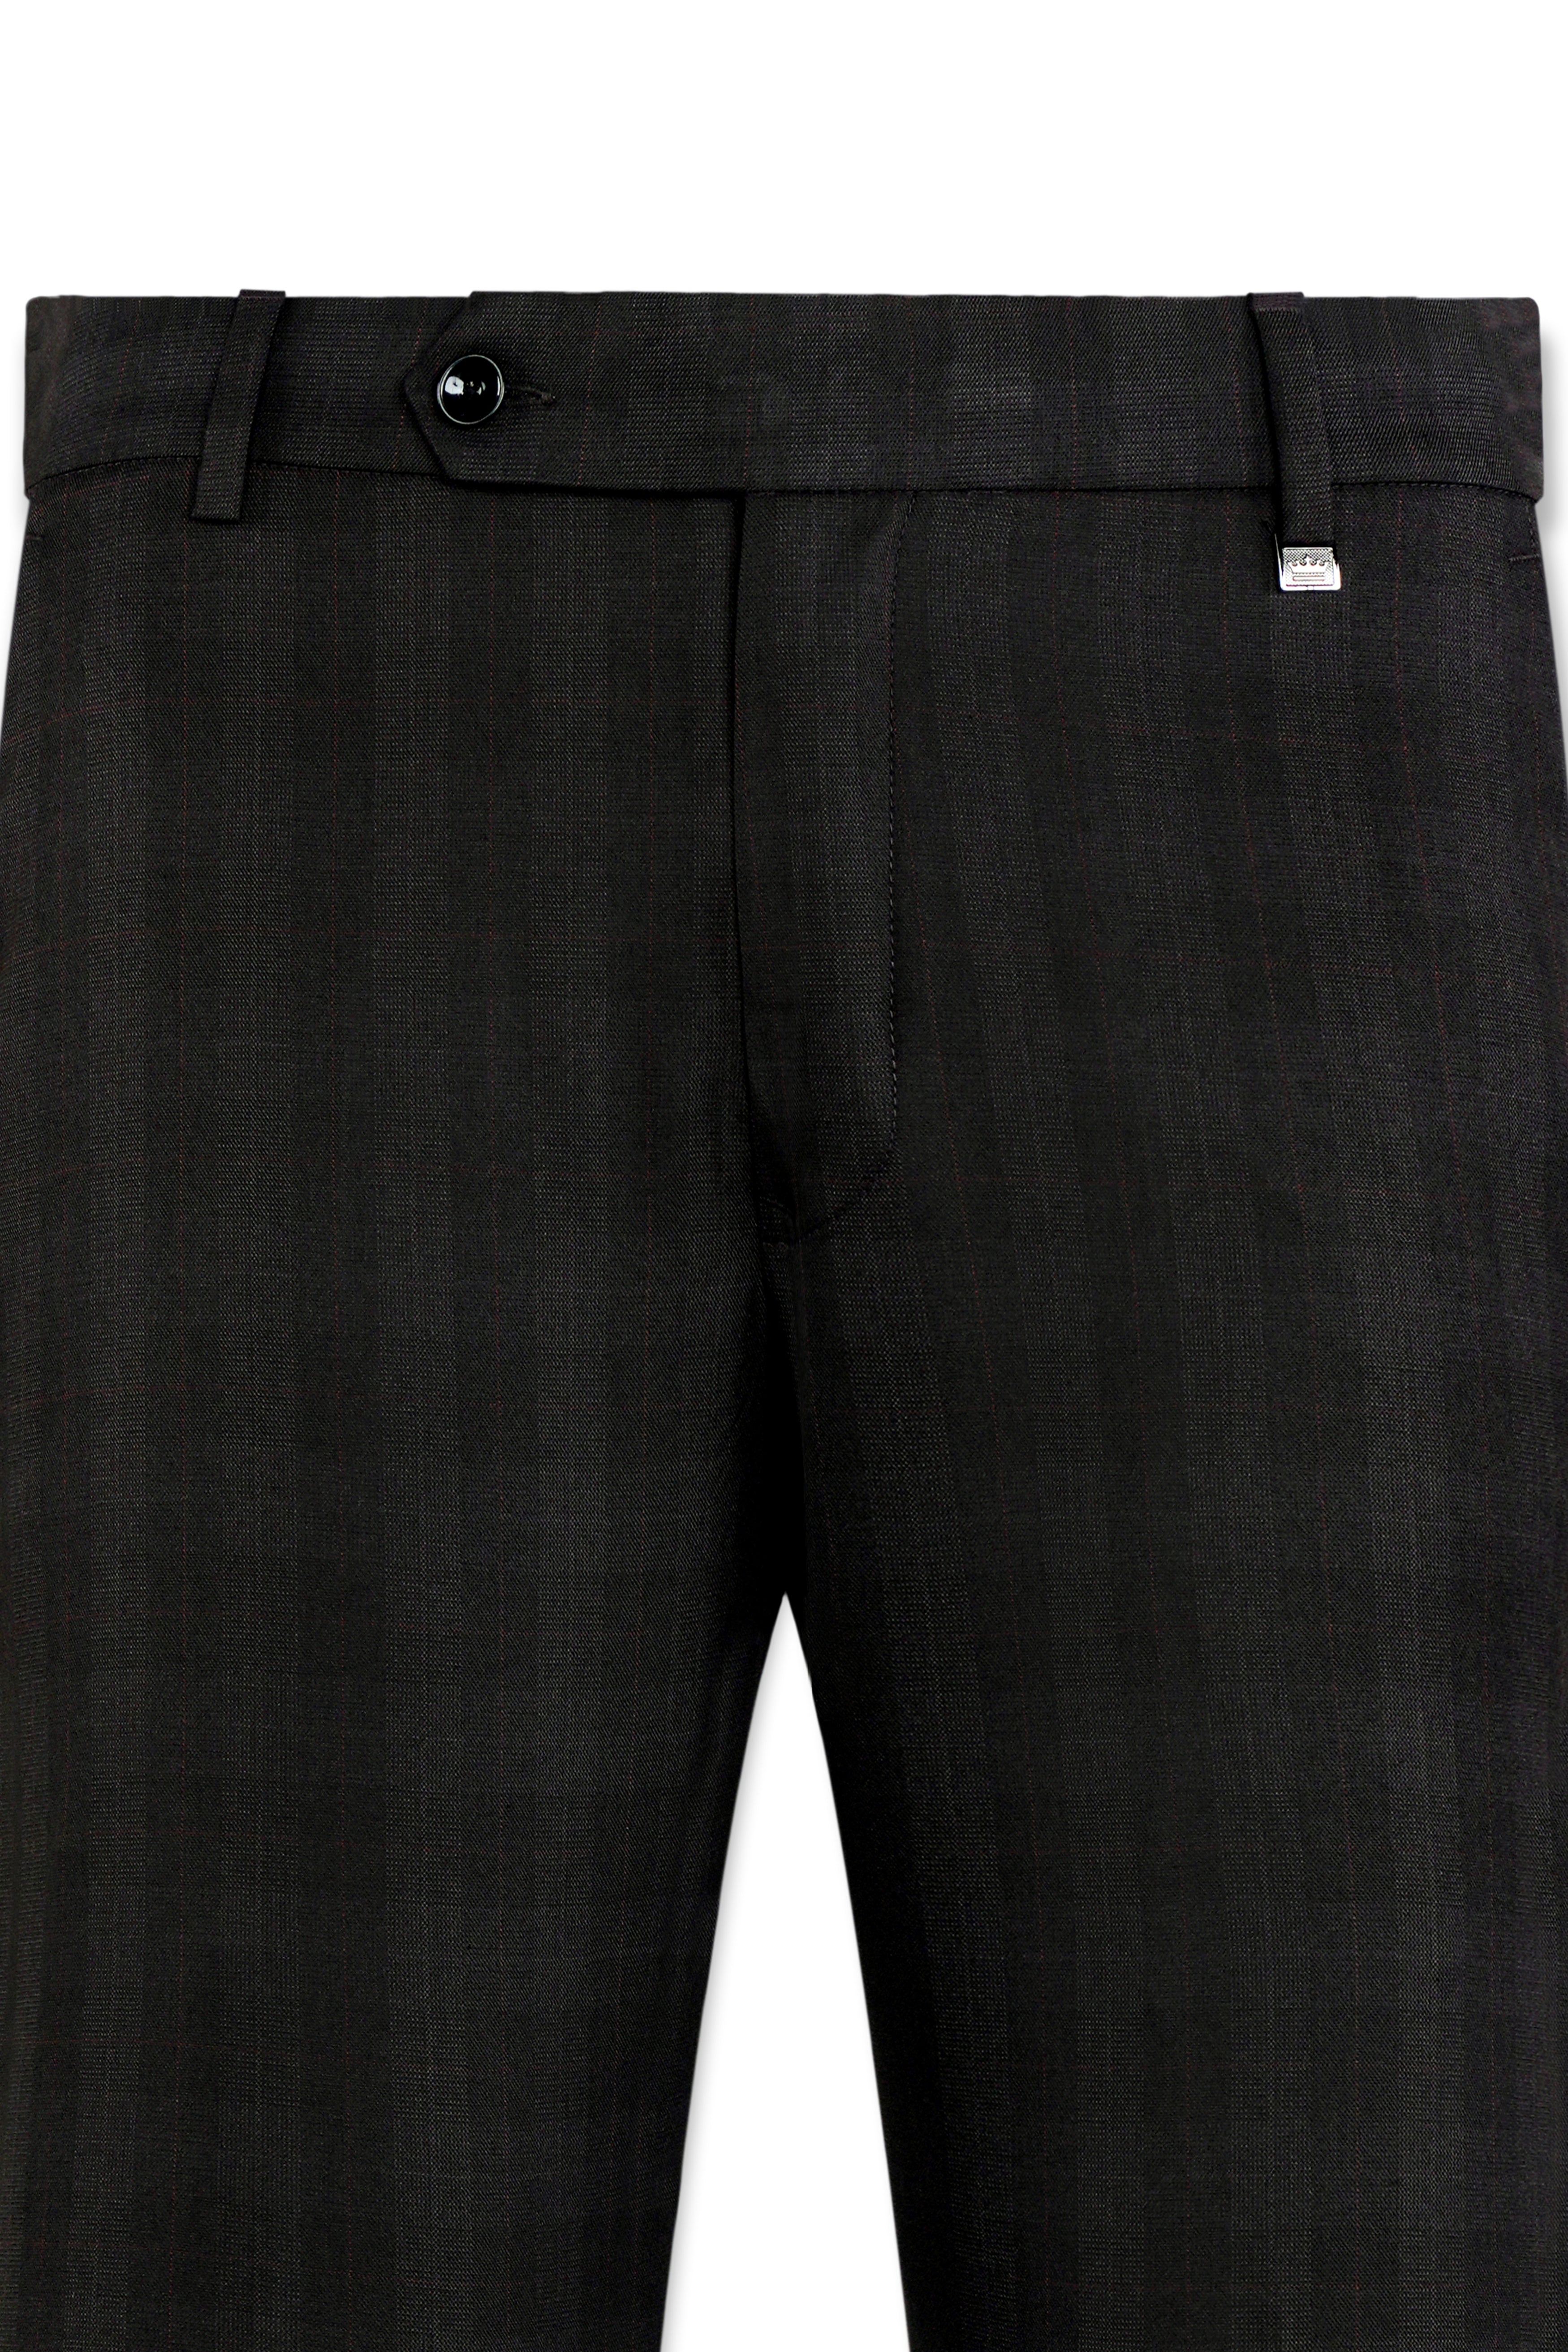 Buy Black Trousers & Pants for Men by BLEU VELVET Online | Ajio.com